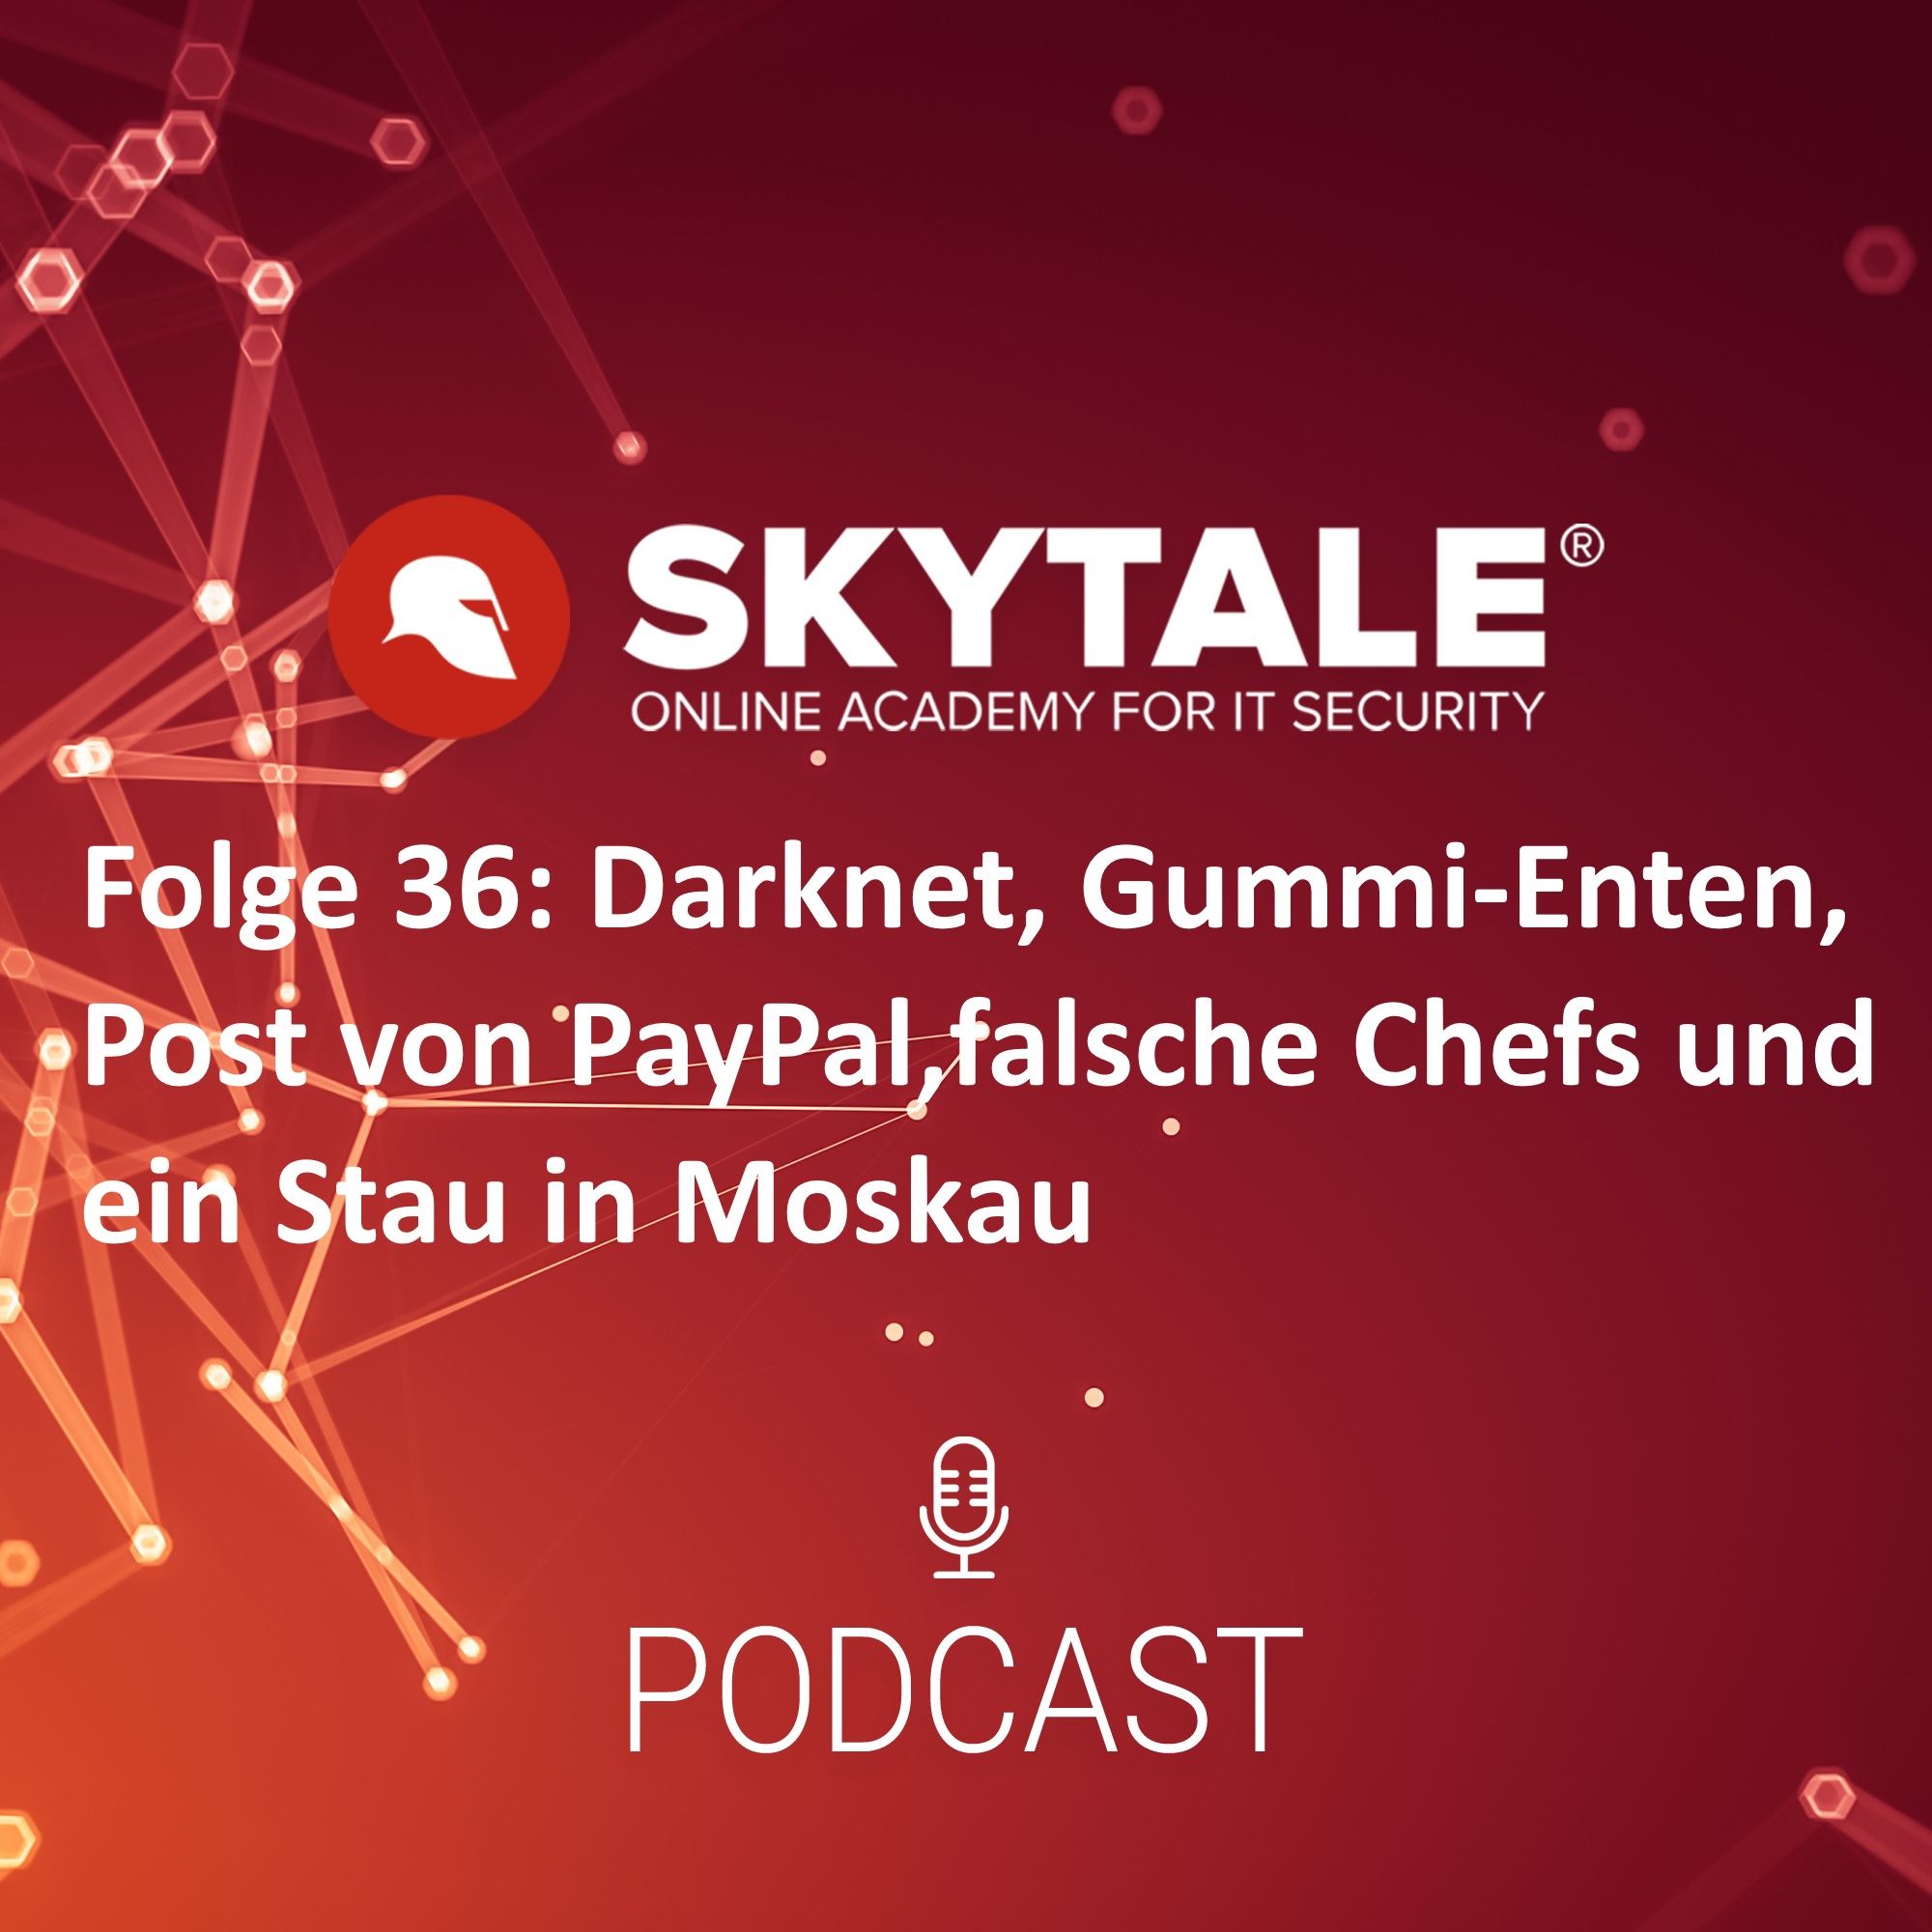 SKYTALE Podcast Folge 36: Darknet, Cookie-Diebstahl, Bad USB Sticks und ein Taxistau